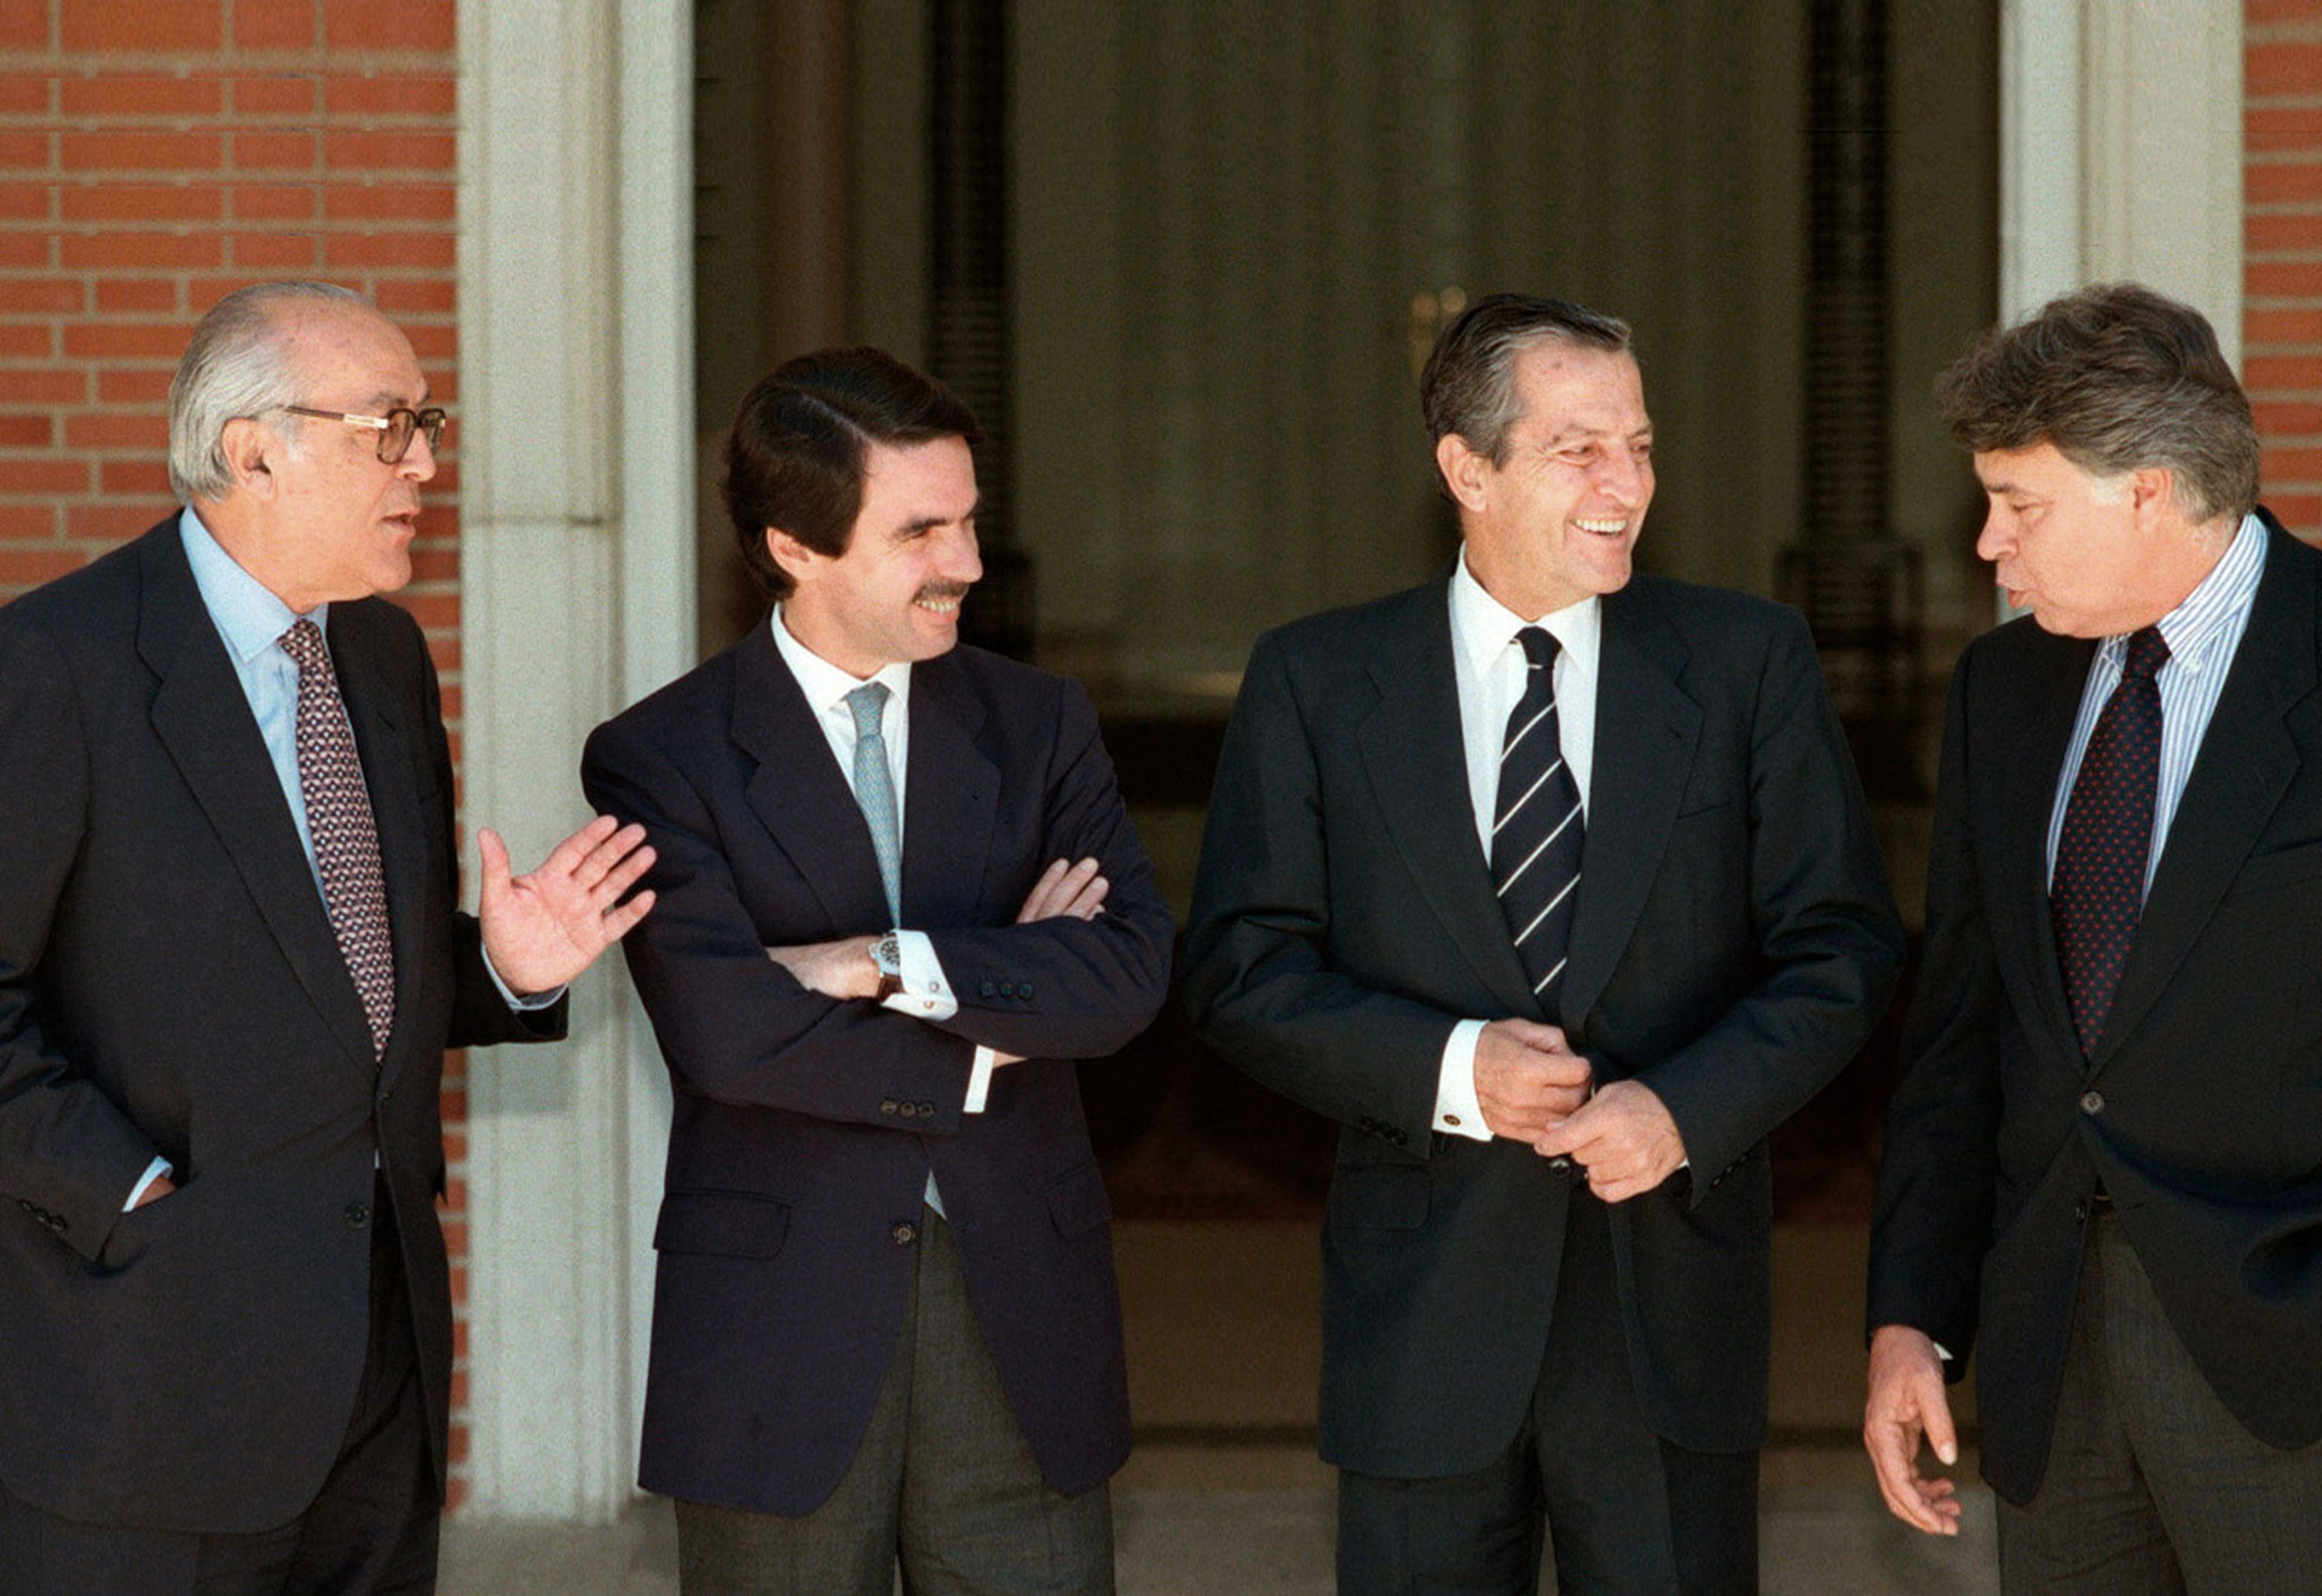 Leopoldo Calvo Sotelo, José María Aznar, Adolfo Suárez y Felipe González, en una imagen de archivo.